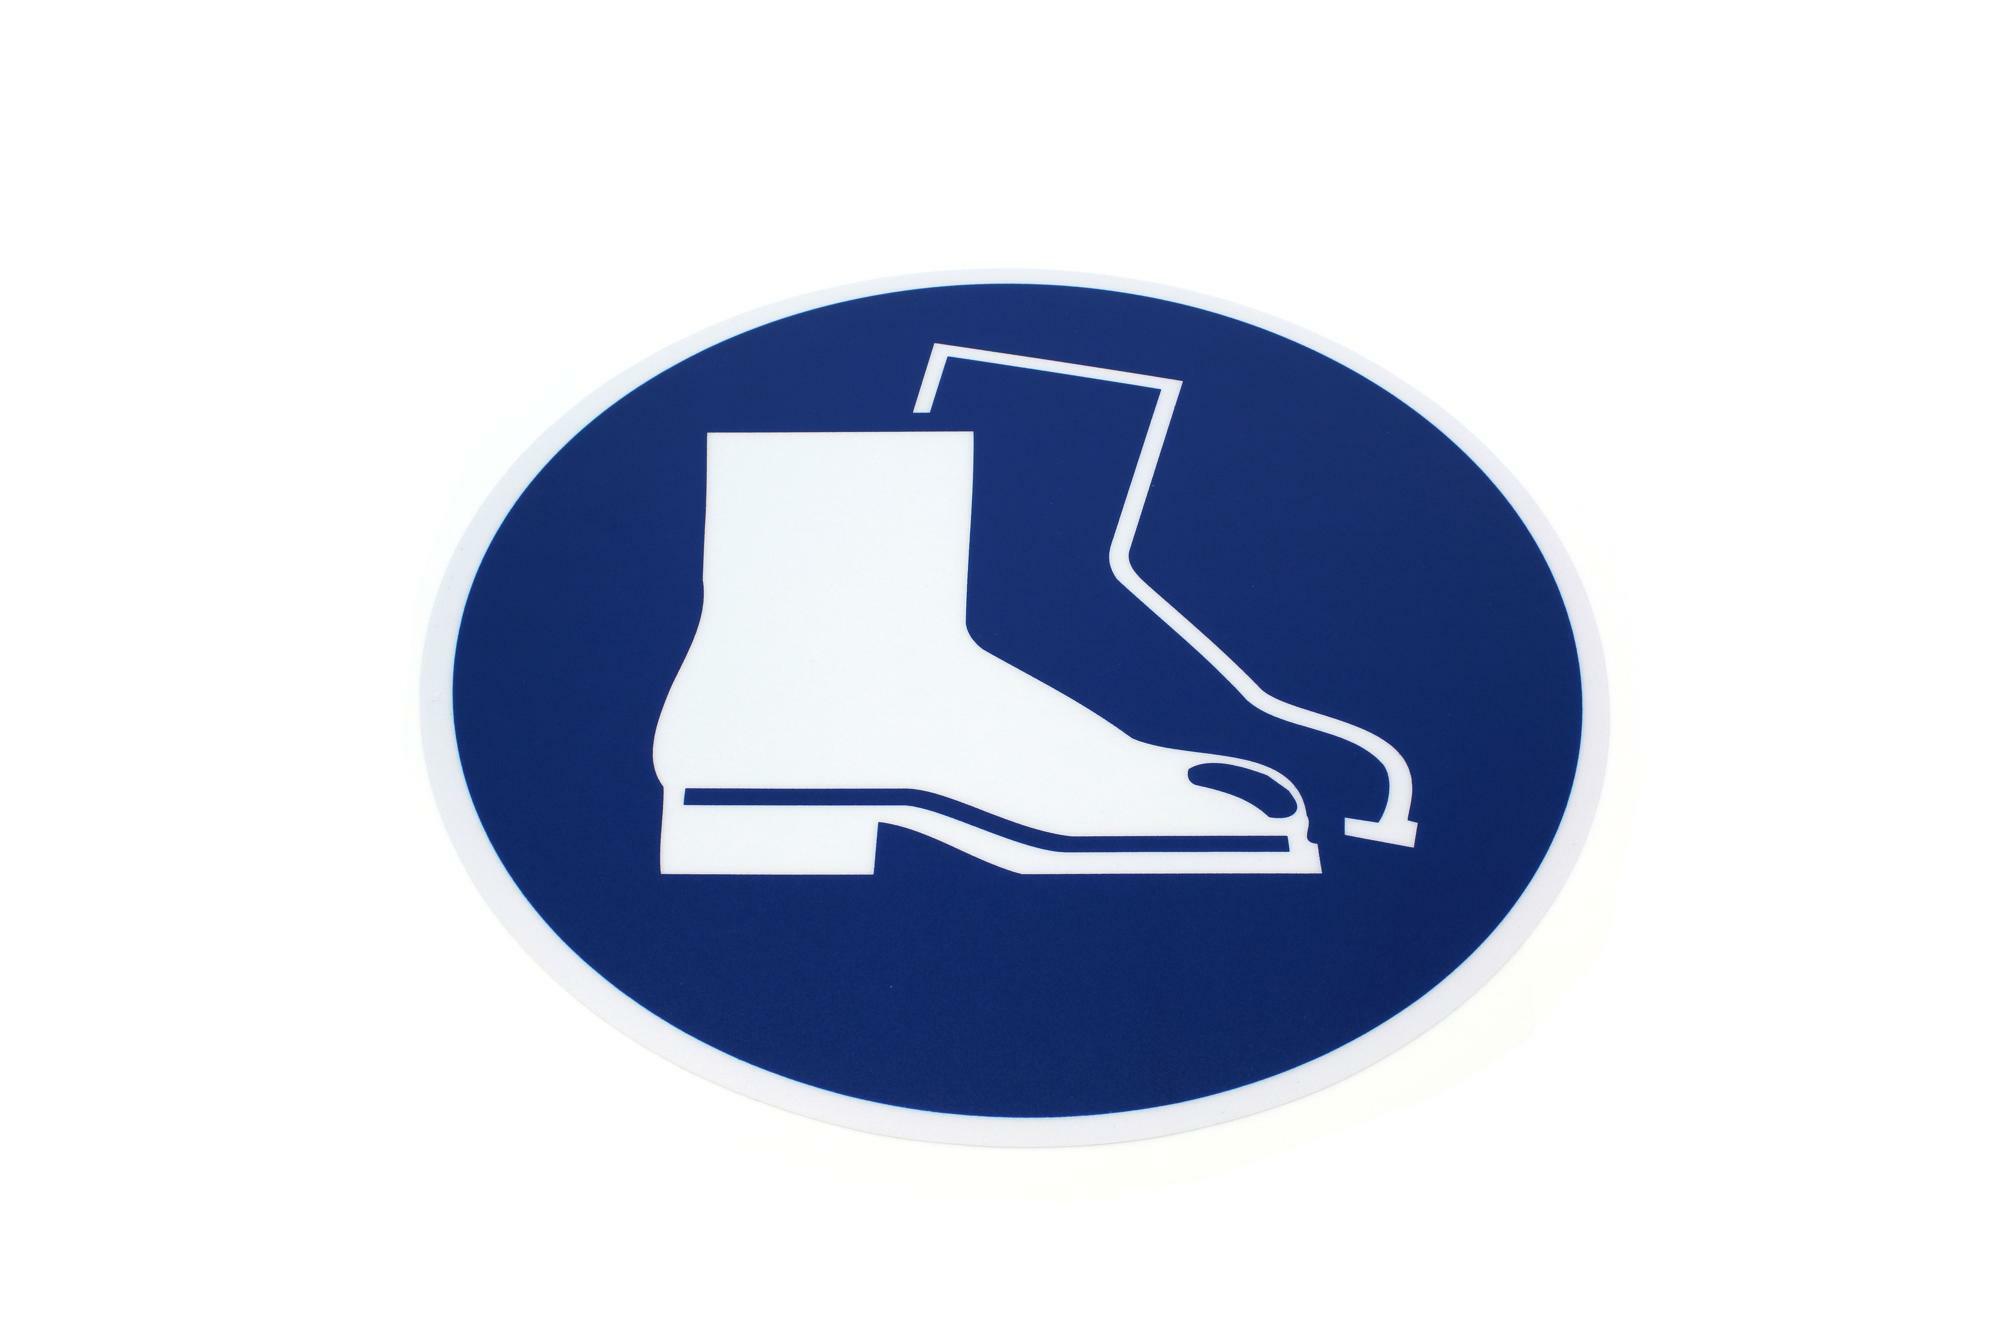 Podlahová značka kulatá - Použij bezpečnostní obuv, O 430 mm